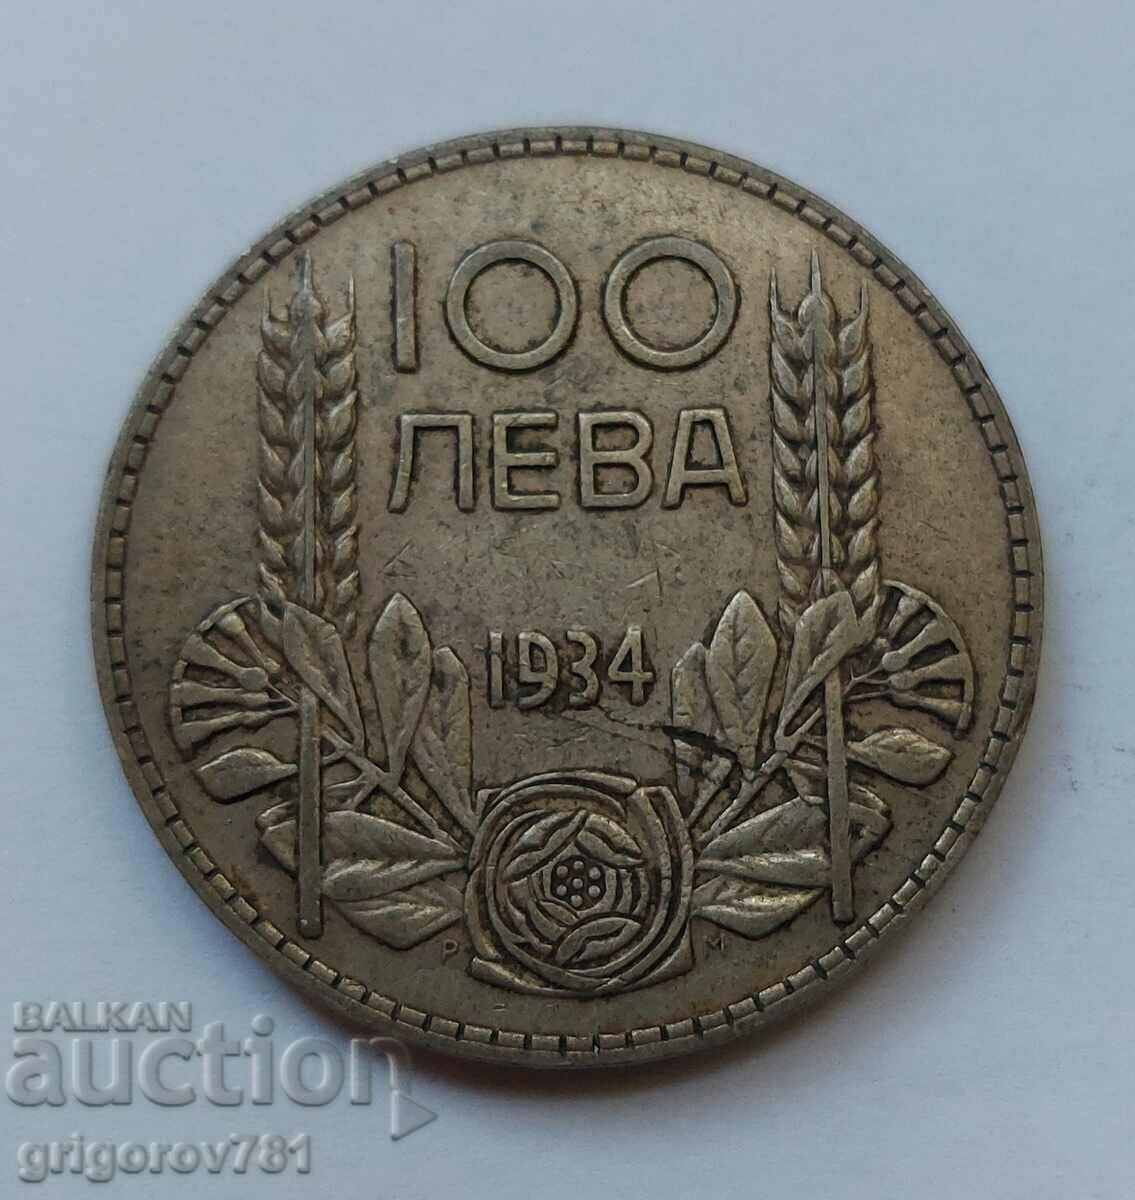 100 leva silver Bulgaria 1934 - silver coin #26